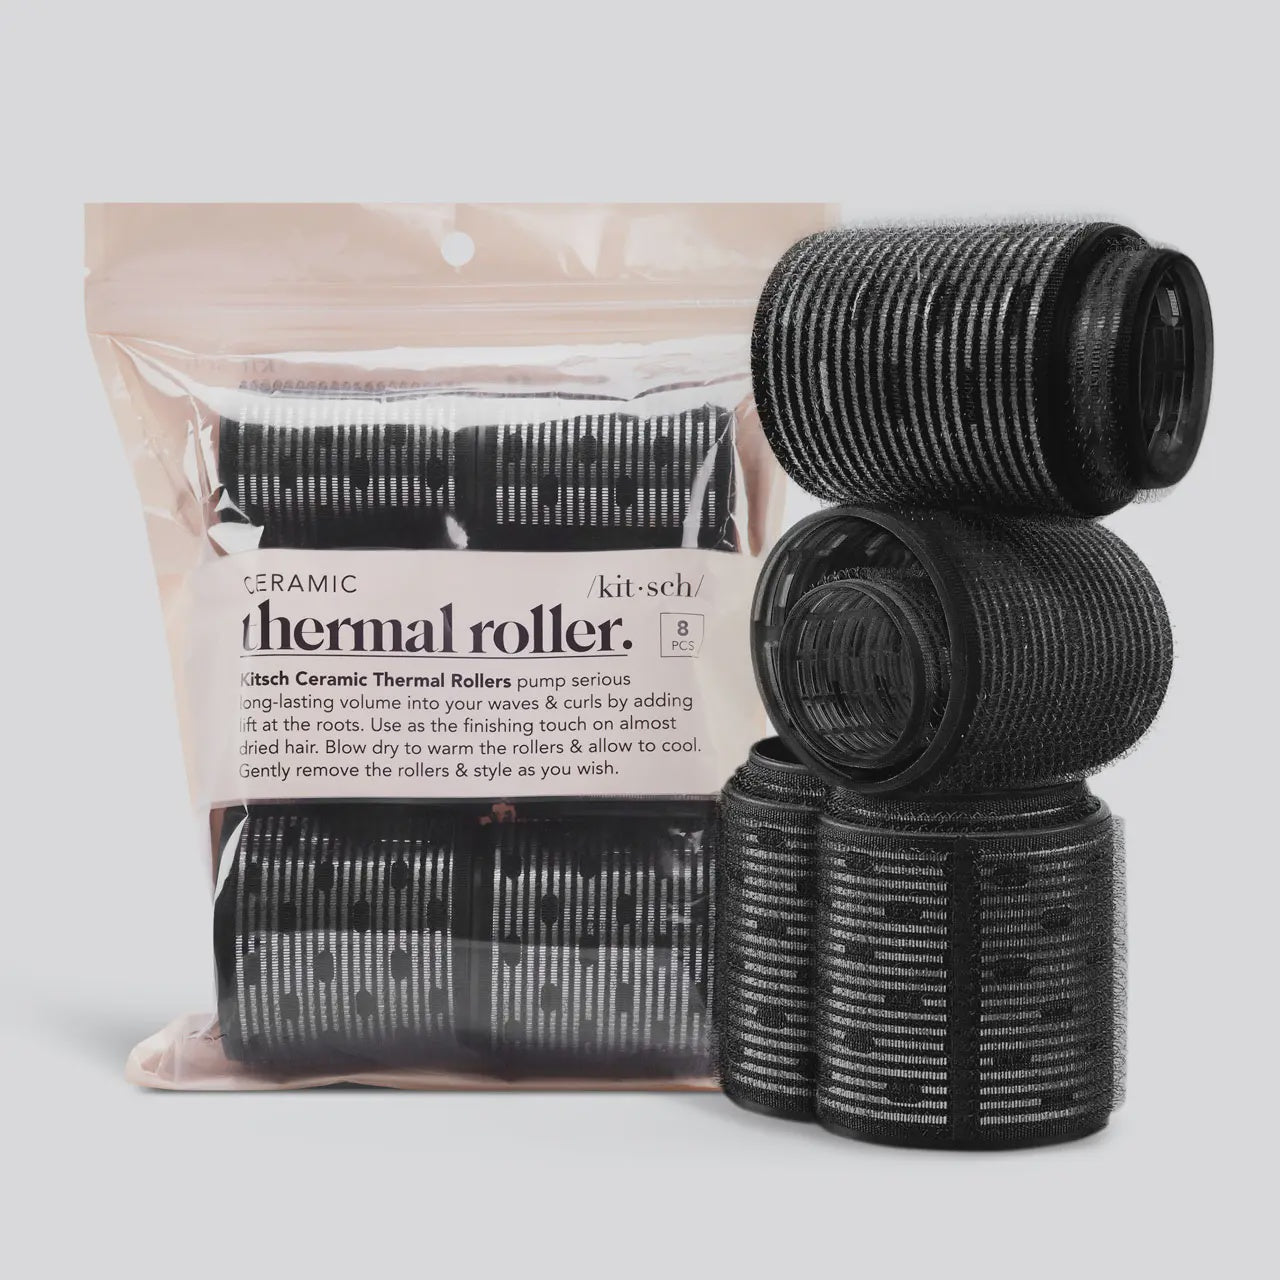 Ceramic Thermal Rollers - 8 Pack